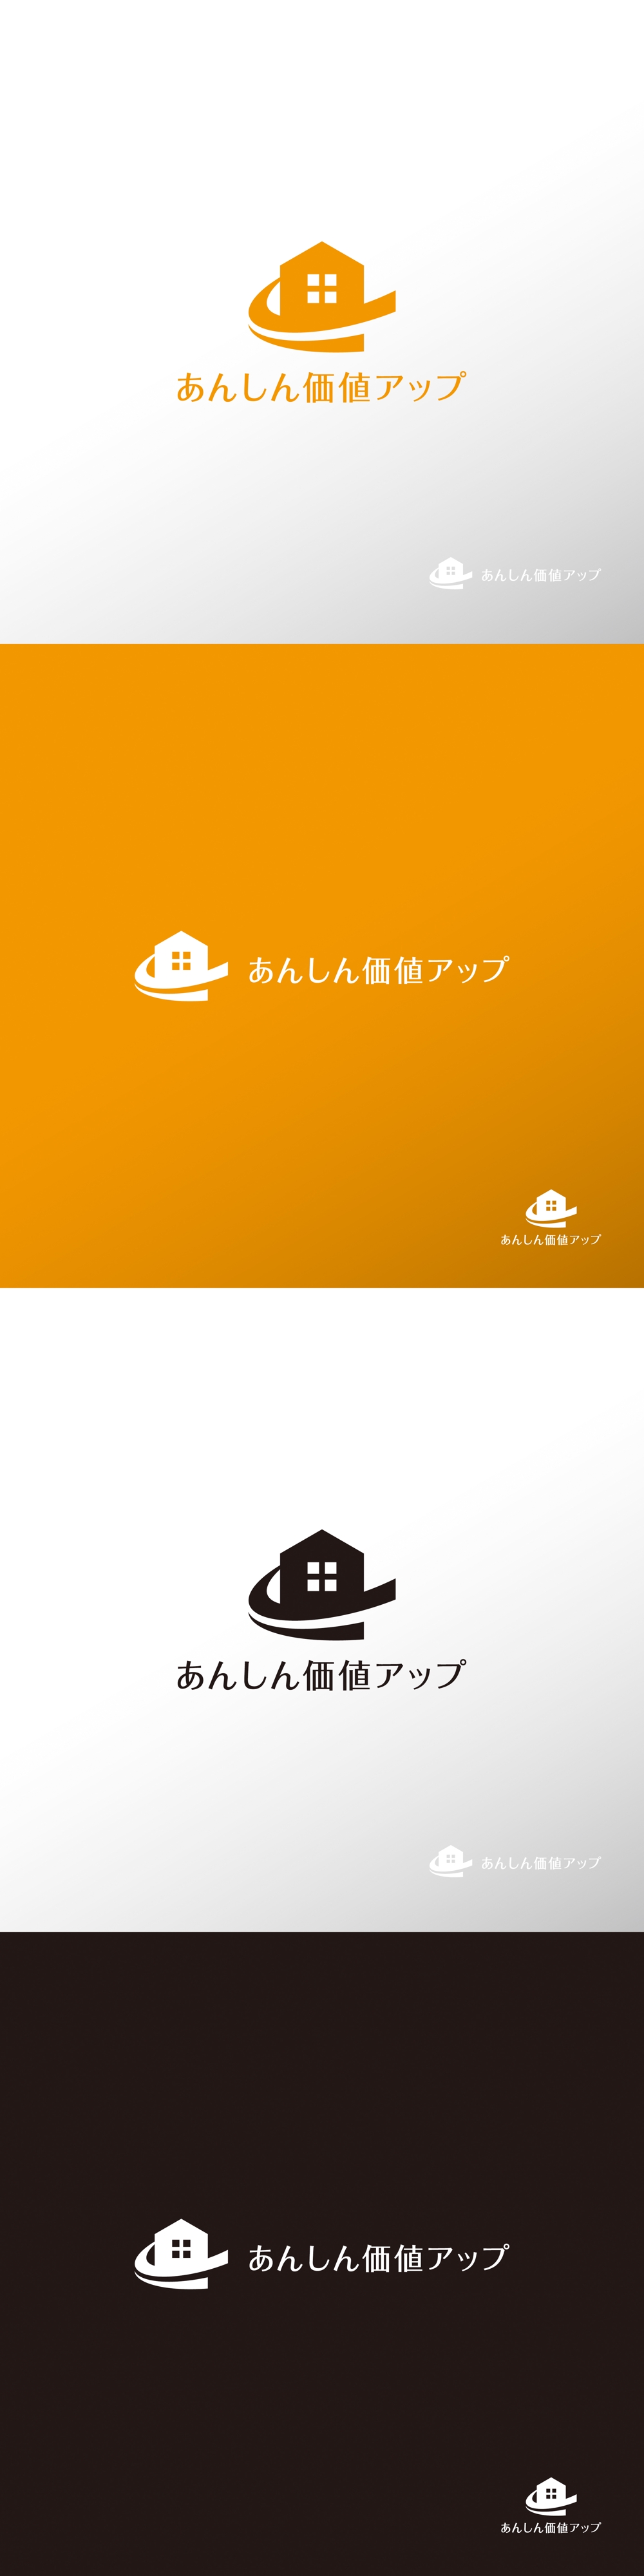 サービス_あんしん価値アップ_ロゴA1.jpg